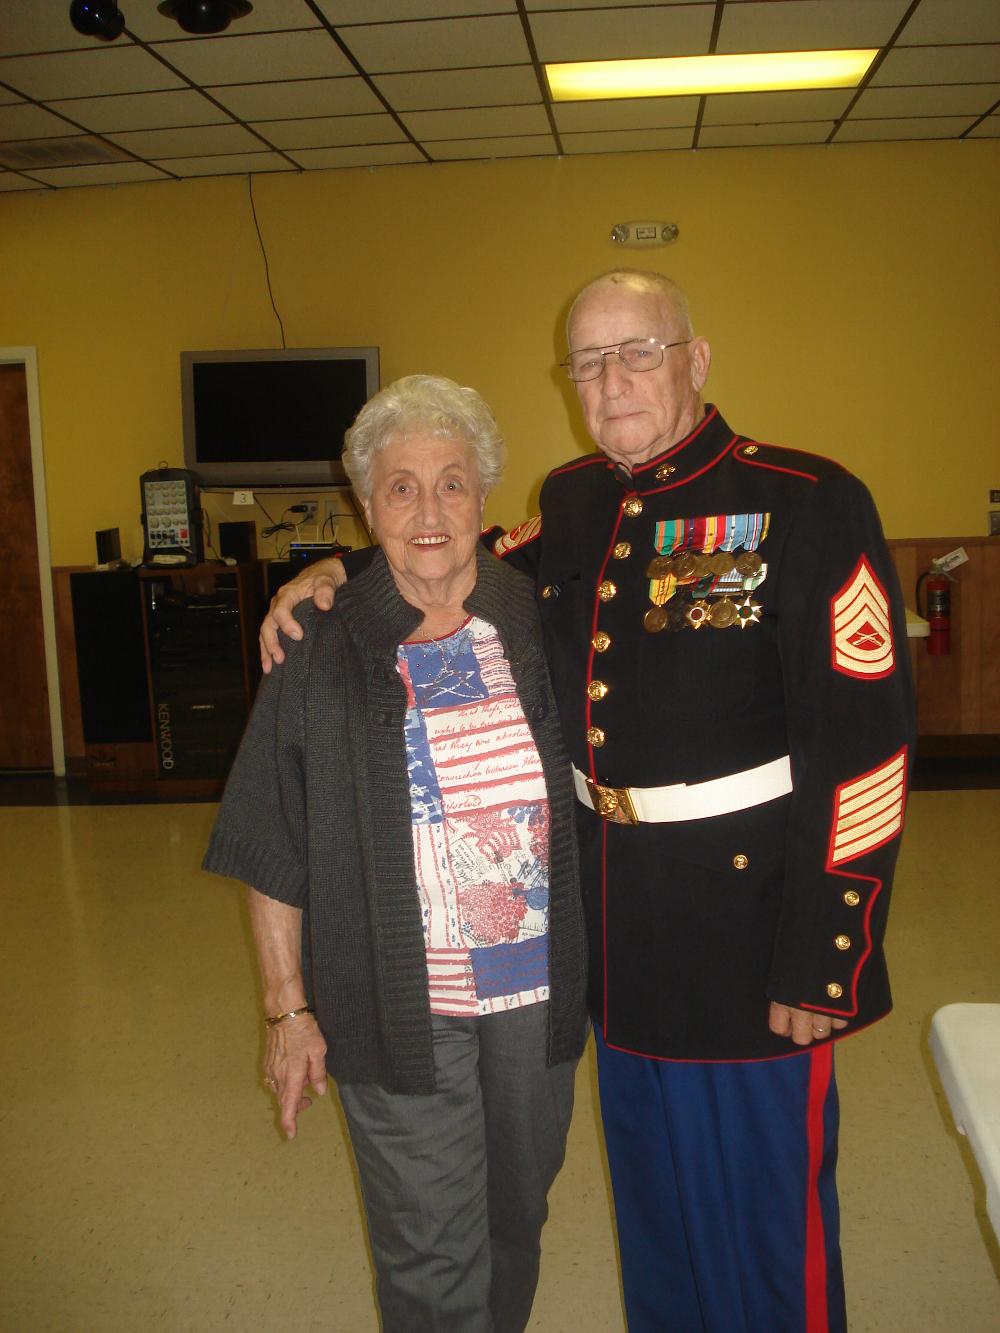 Bill and Tudy Ruffian
Veterans' Day 2014